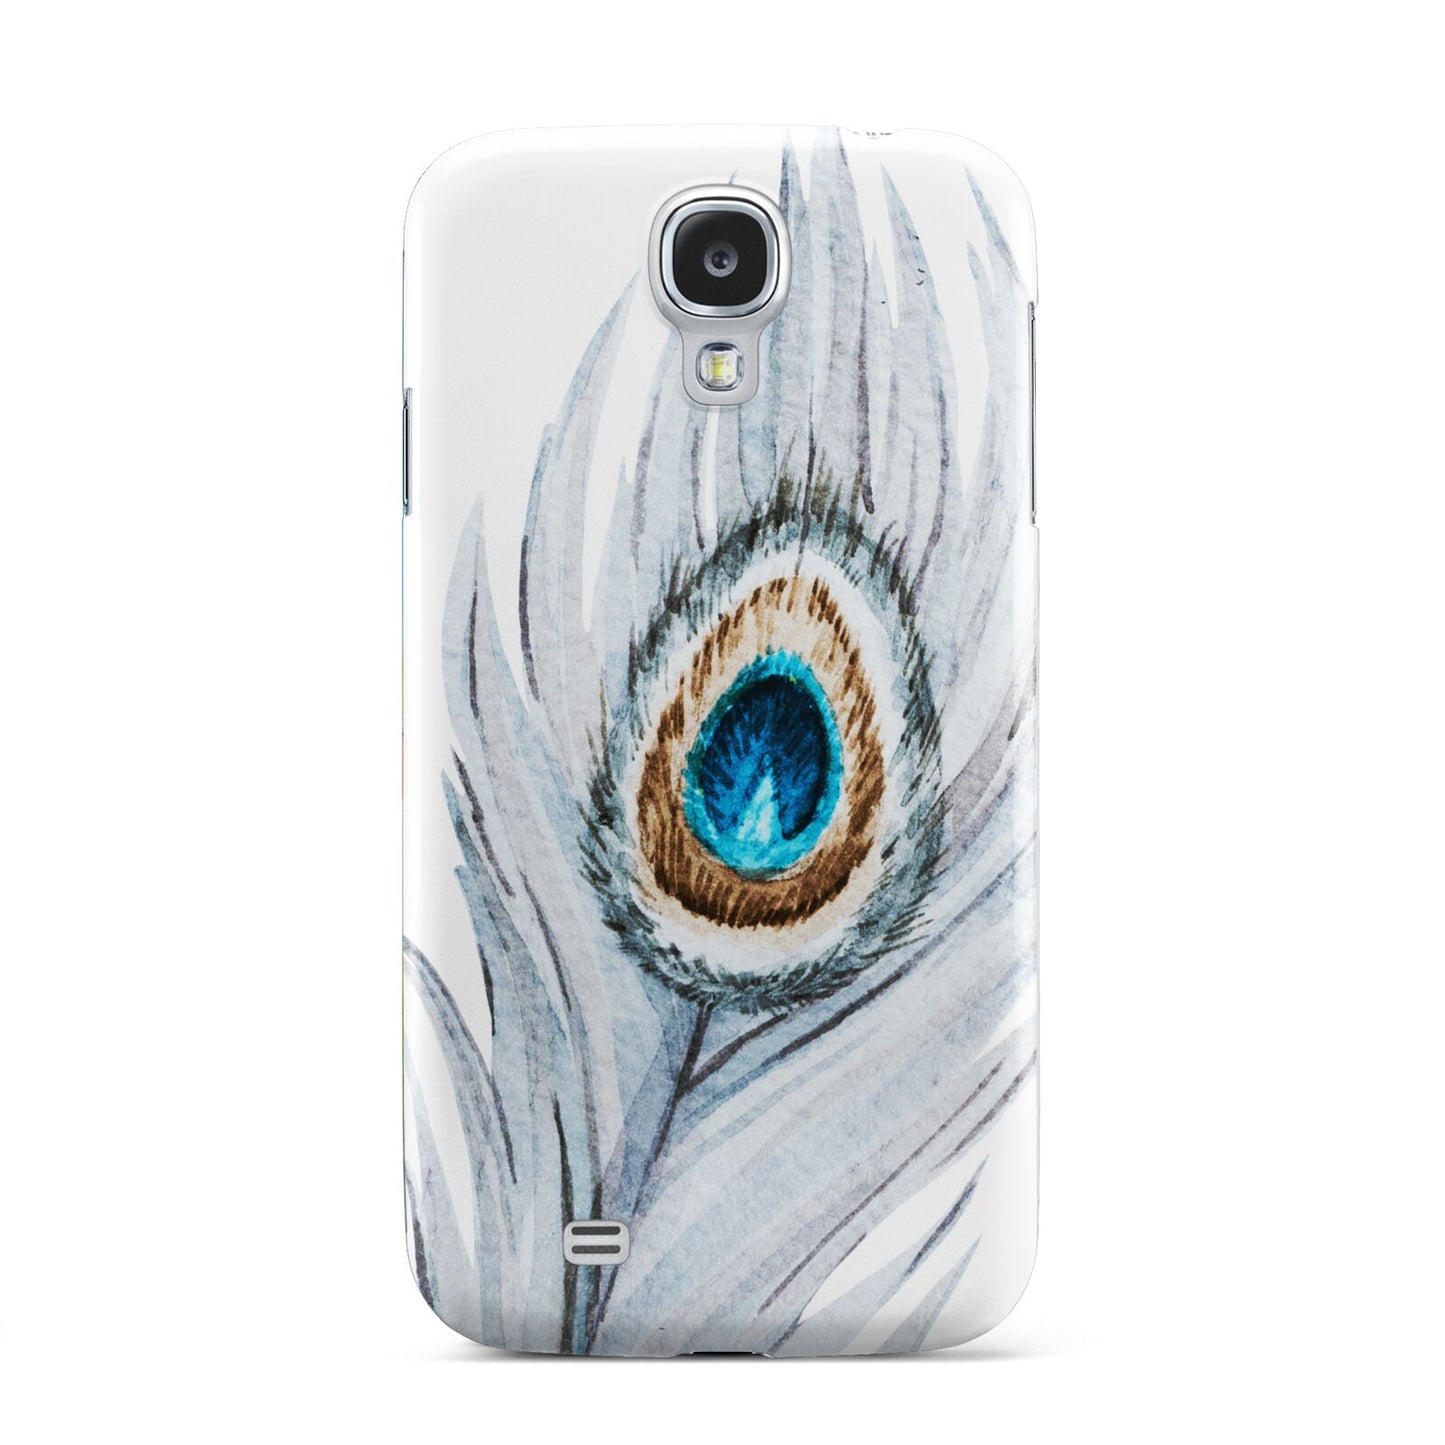 Peacock Samsung Galaxy S4 Case